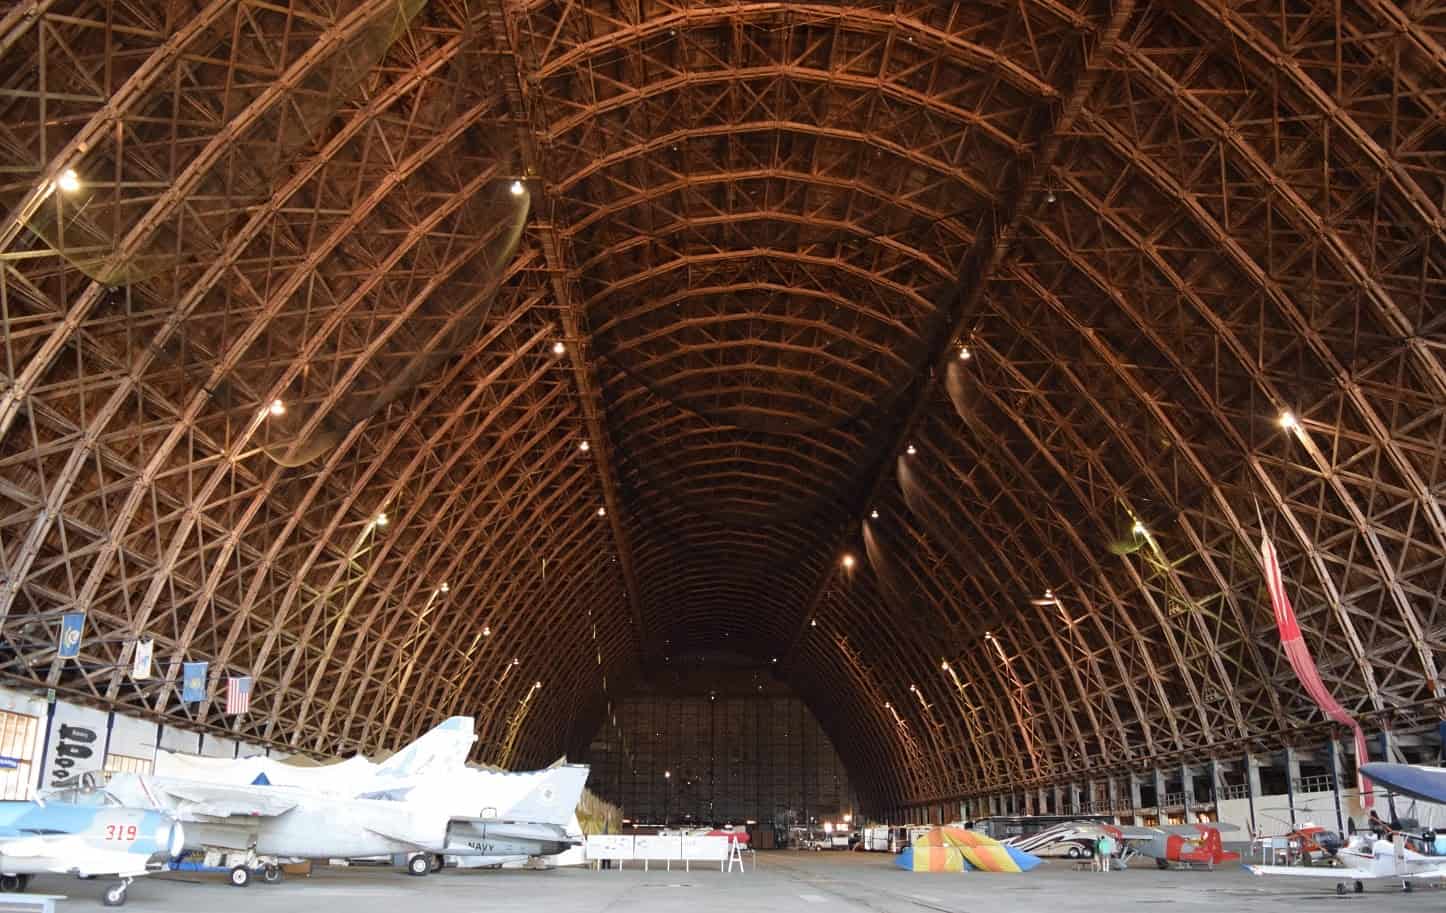 Hangar B at the Naval Air Station in Tillamook, Oregon